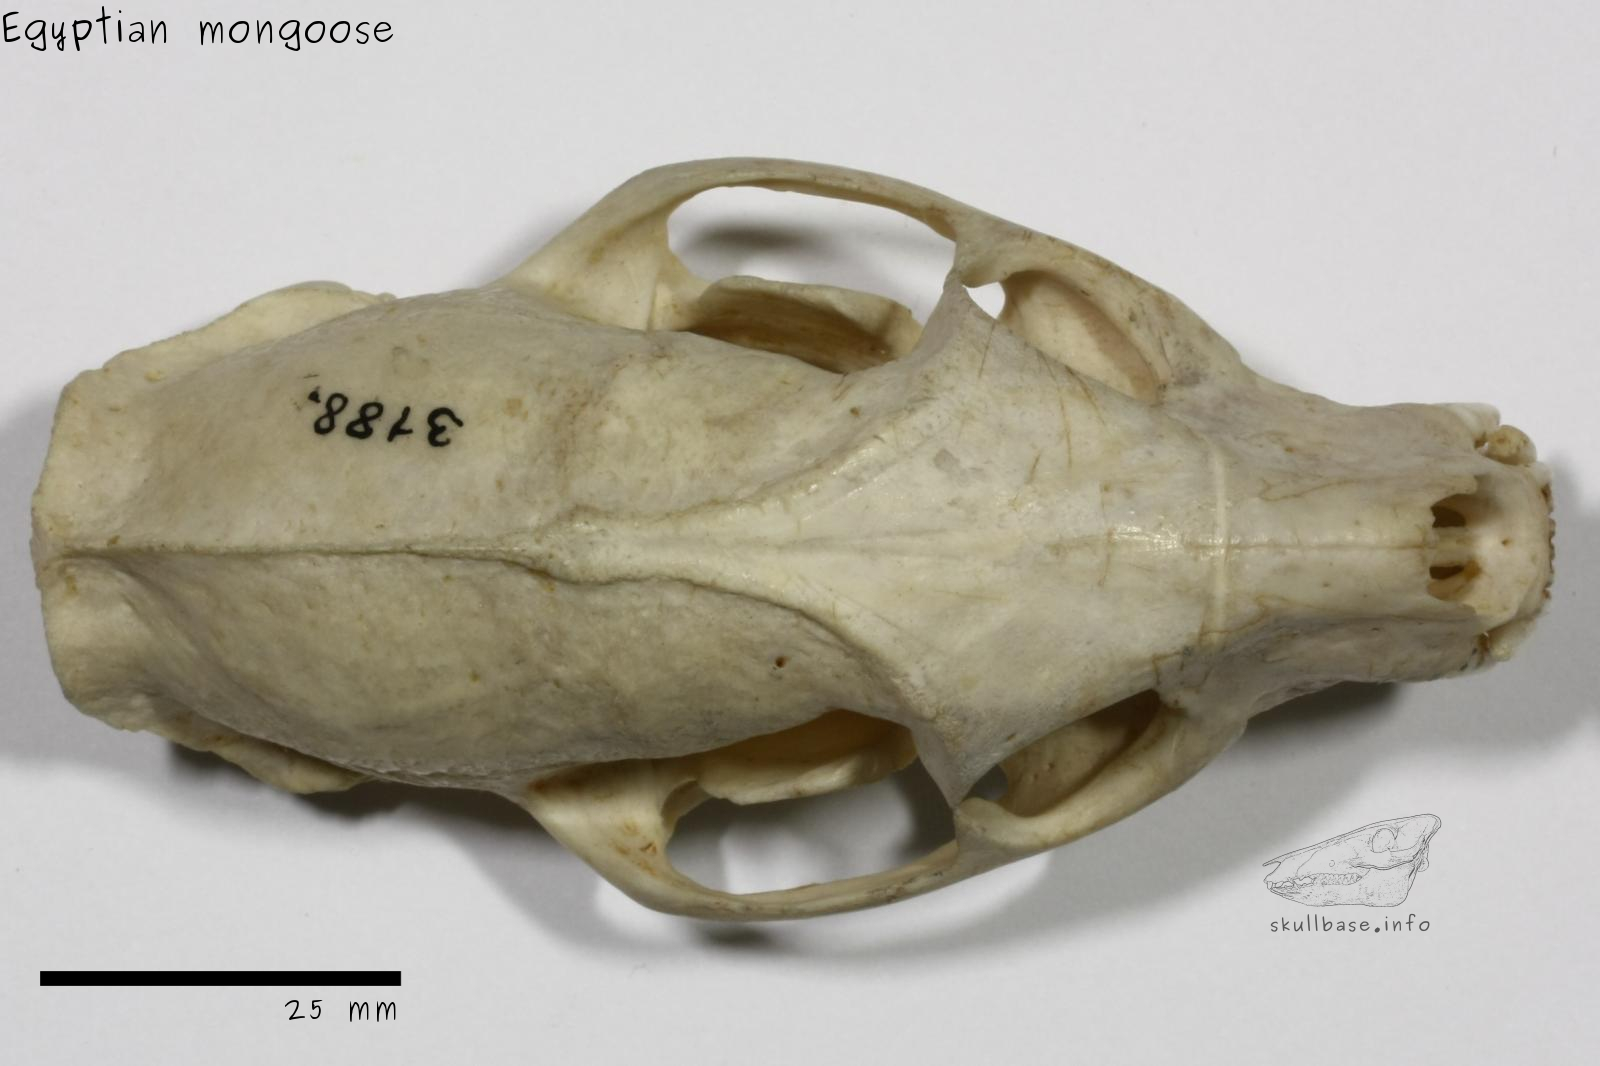 Egyptian mongoose (Herpestes ichneumon) skull dorsal view